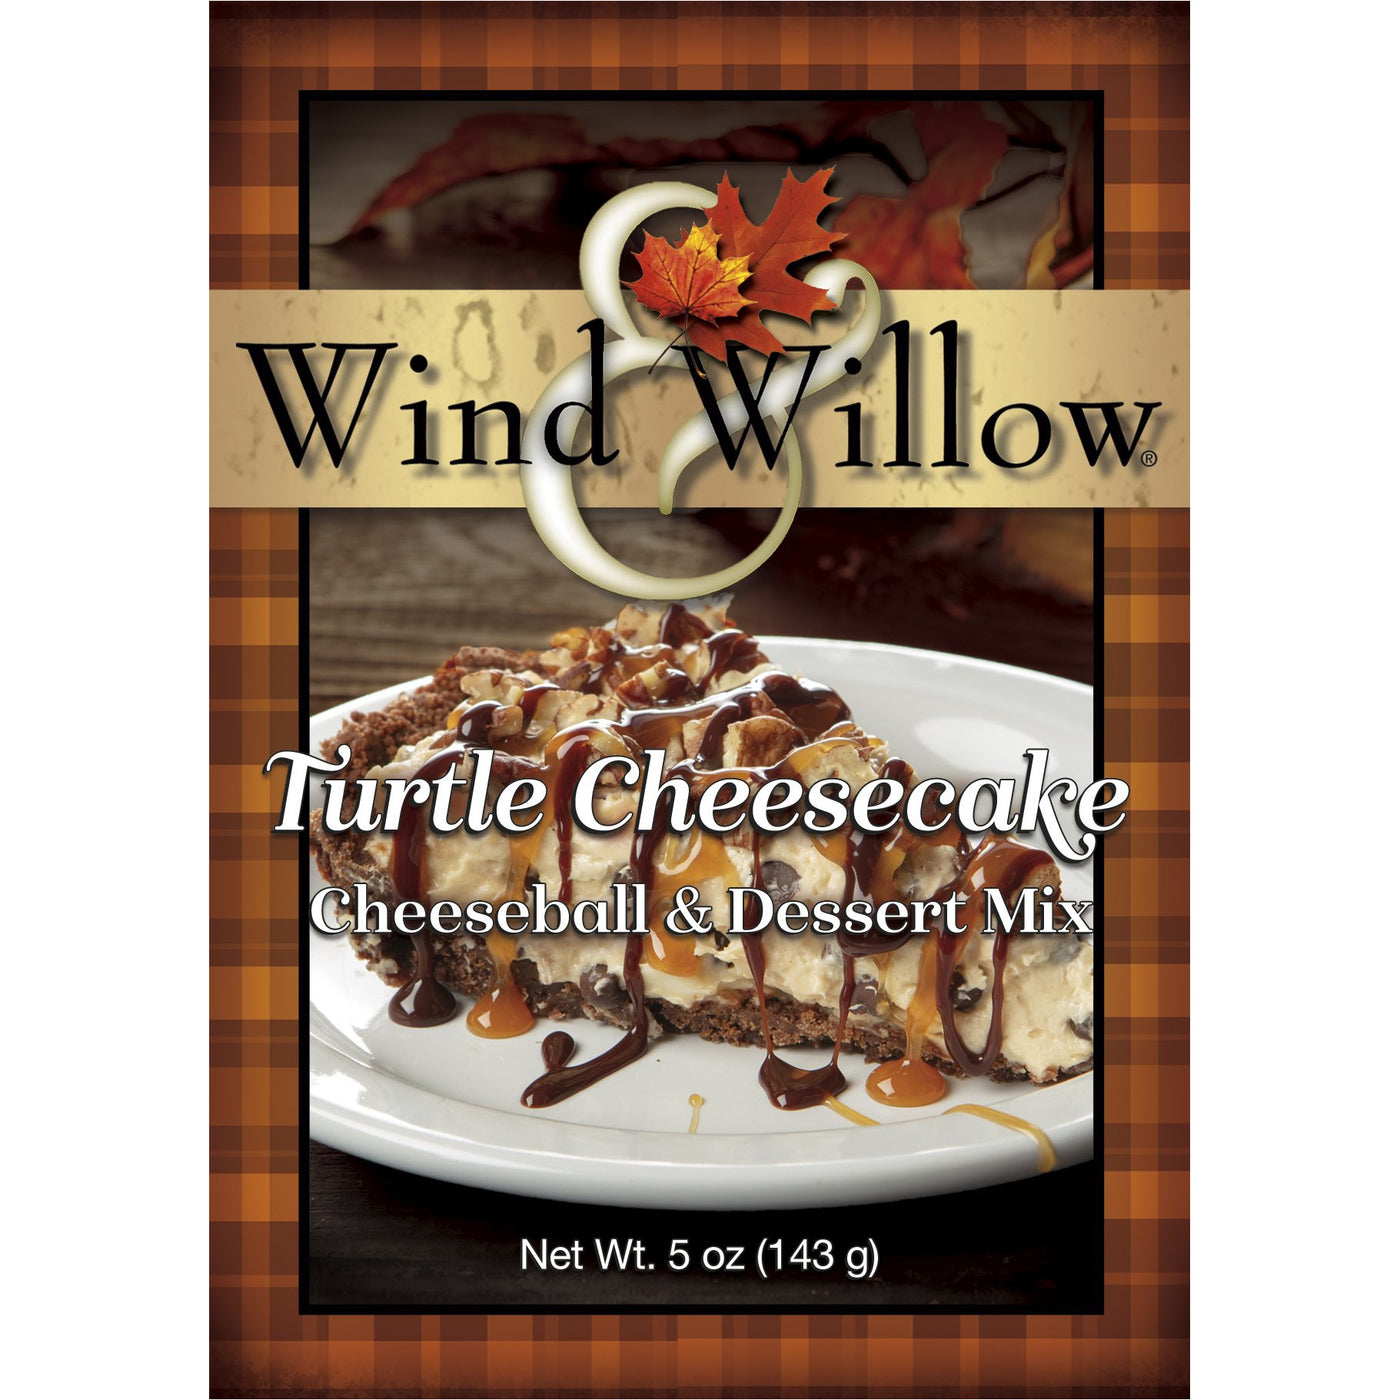 Turtle Cheesecake Cheeseball and Dessert Mix - Smockingbird's